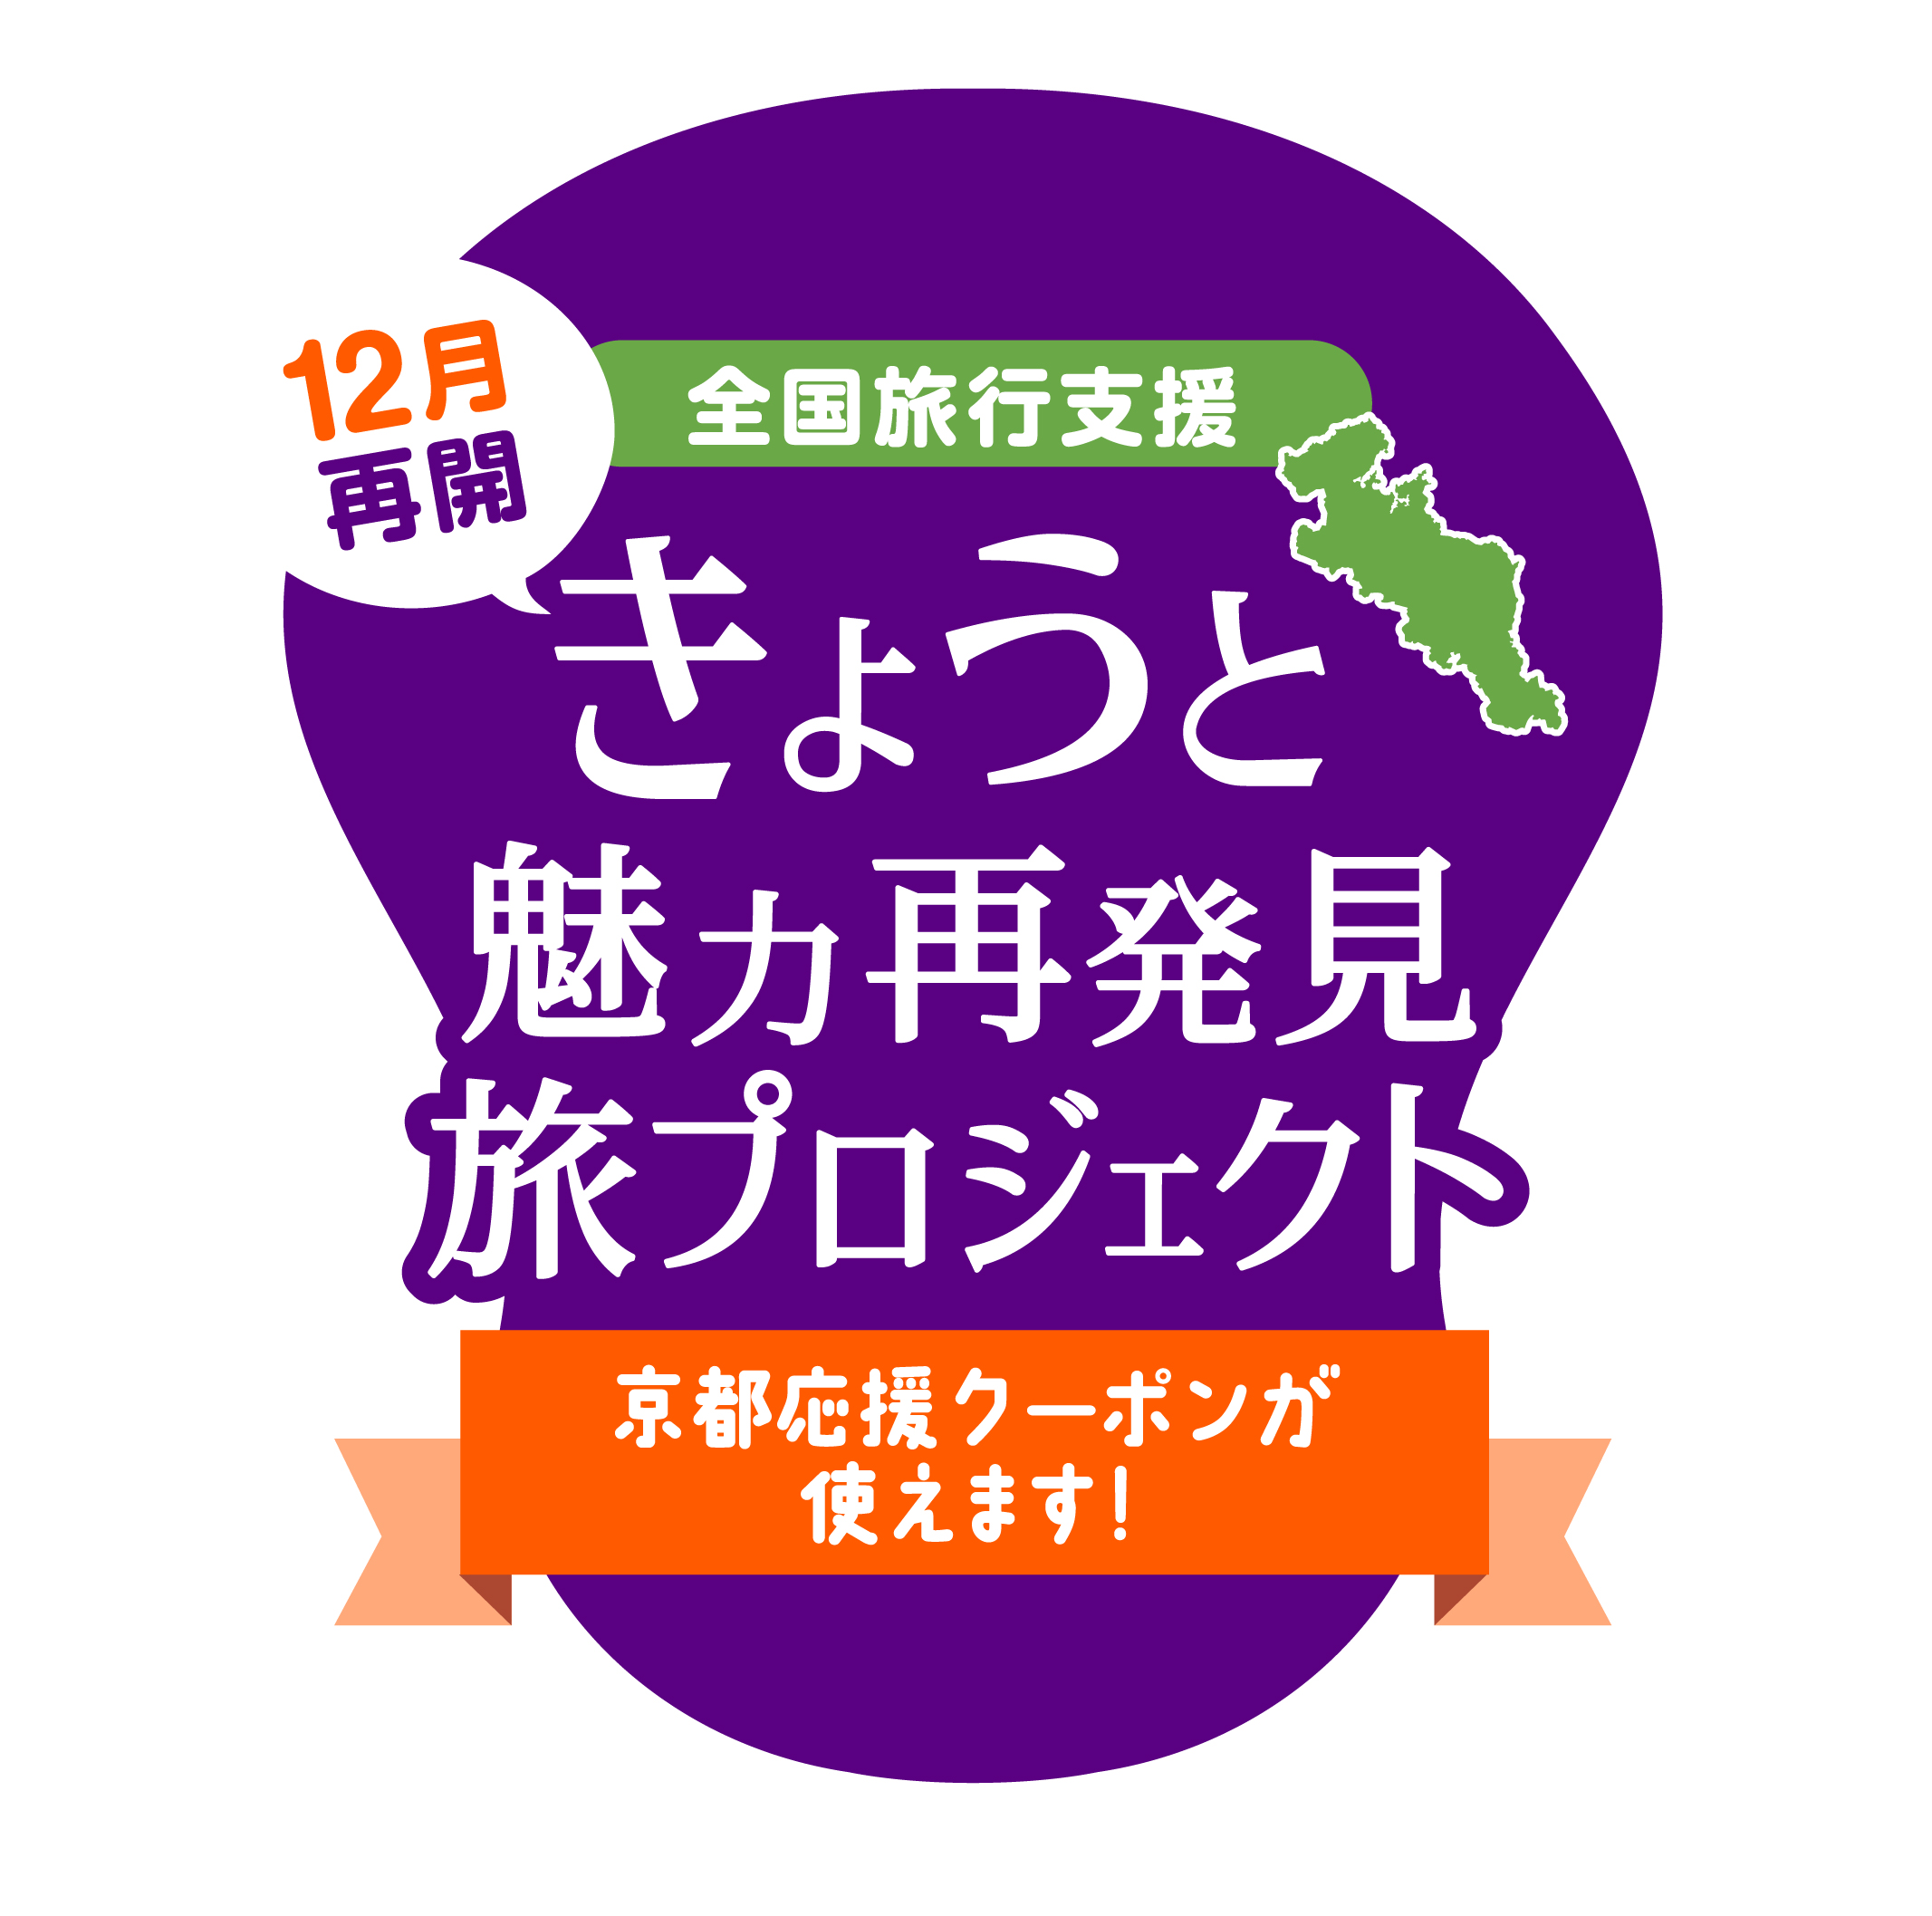 【全国旅行支援事業】【京都応援クーポン券】がご利用いただけます。【12/1～12/3】